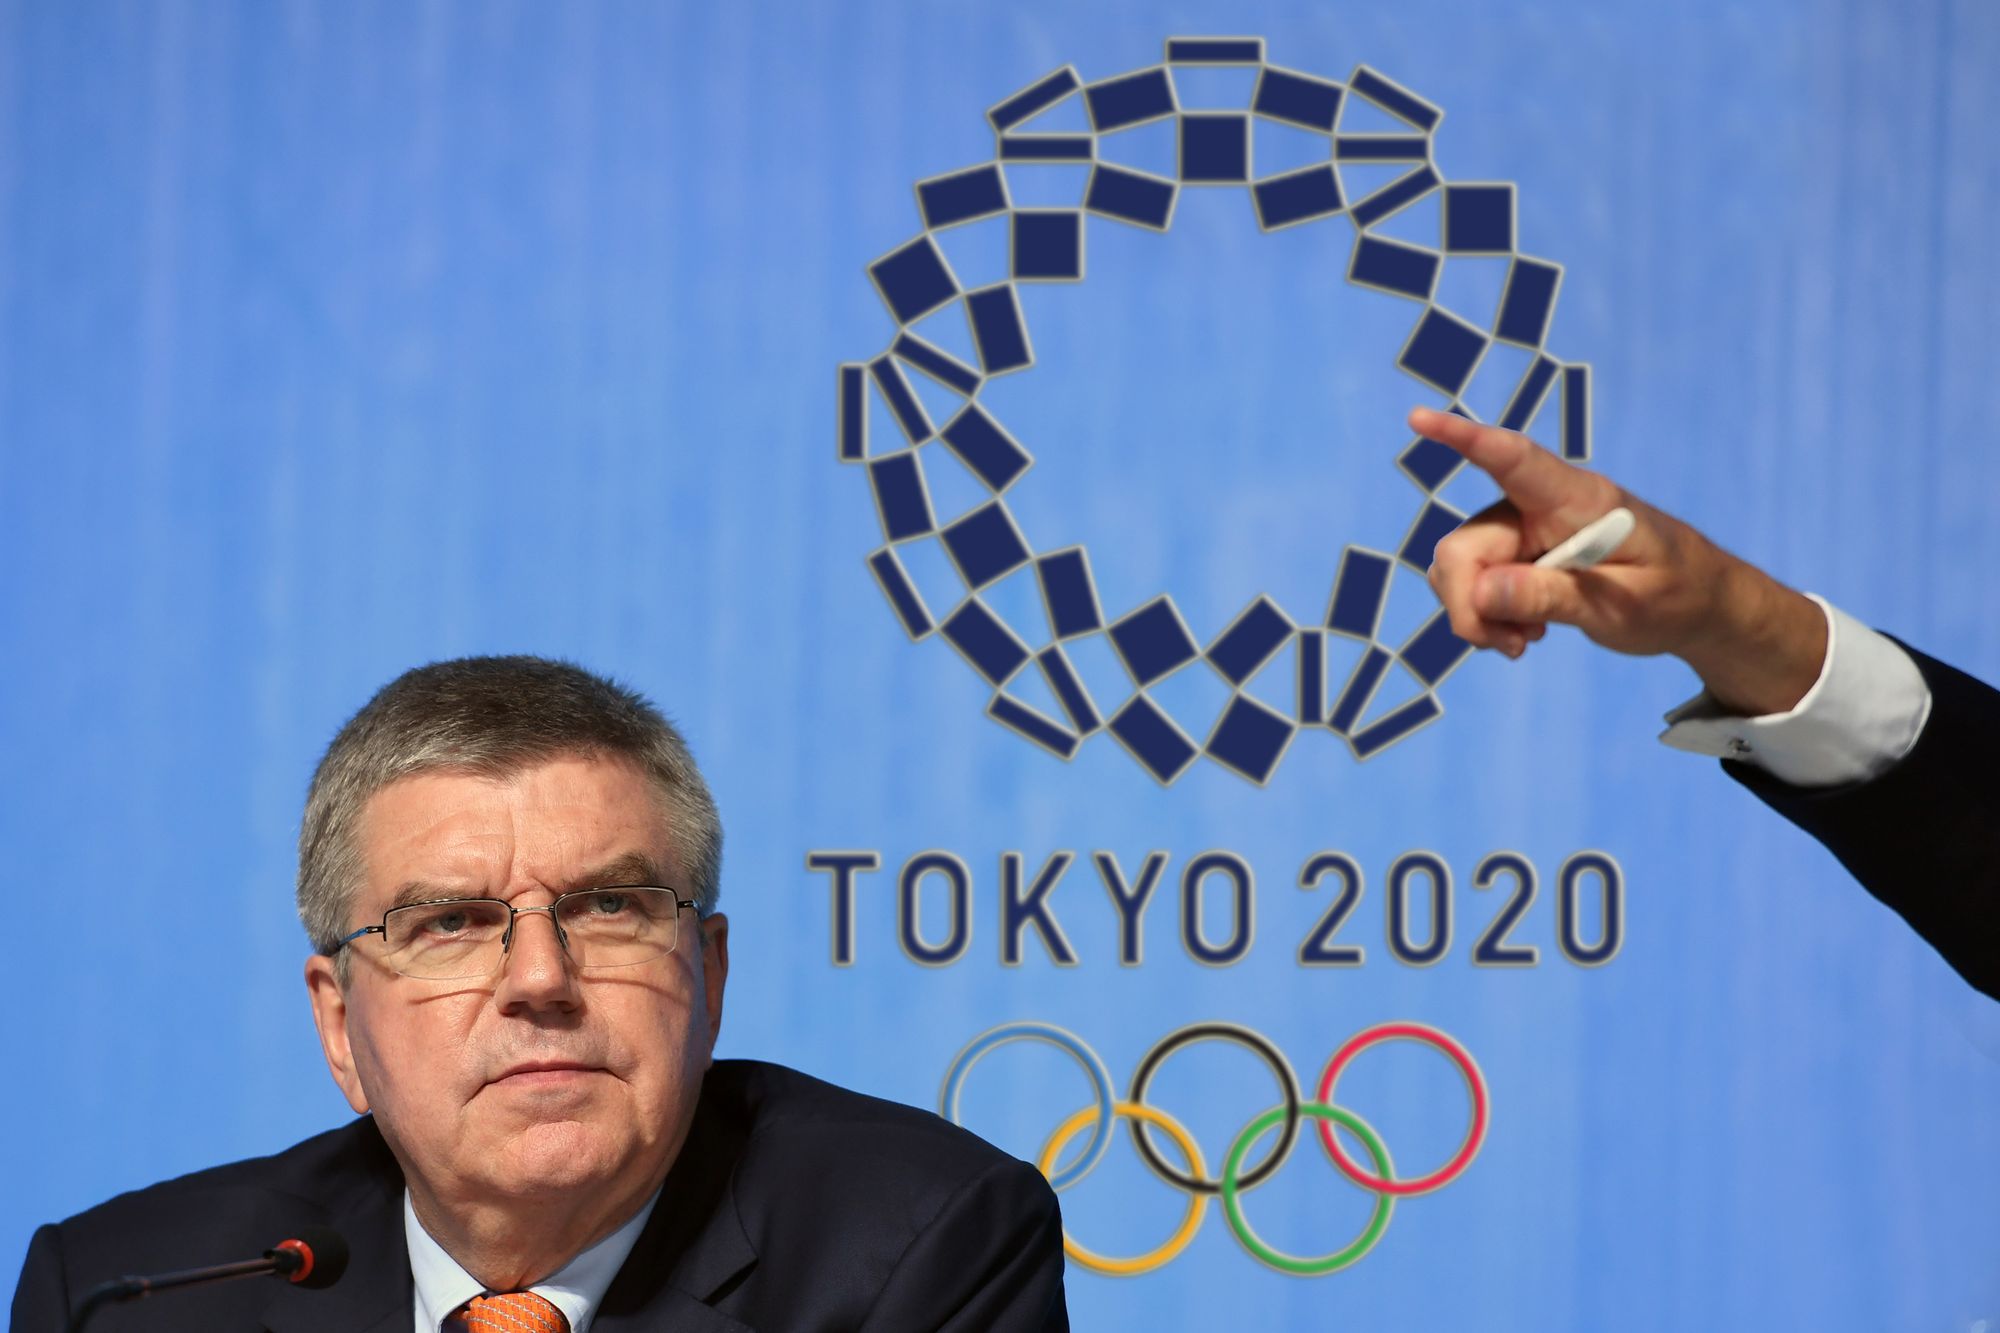 Több ország is kérte már a Nemzetközi Olimpiai Bizottságot, hogy döntsenek a halasztás mellett. Thomas Bach elnök szerint szó lehet a halasztásról, de a játékokat semmi esetre sem törölnék el / Fotó: Northfoto